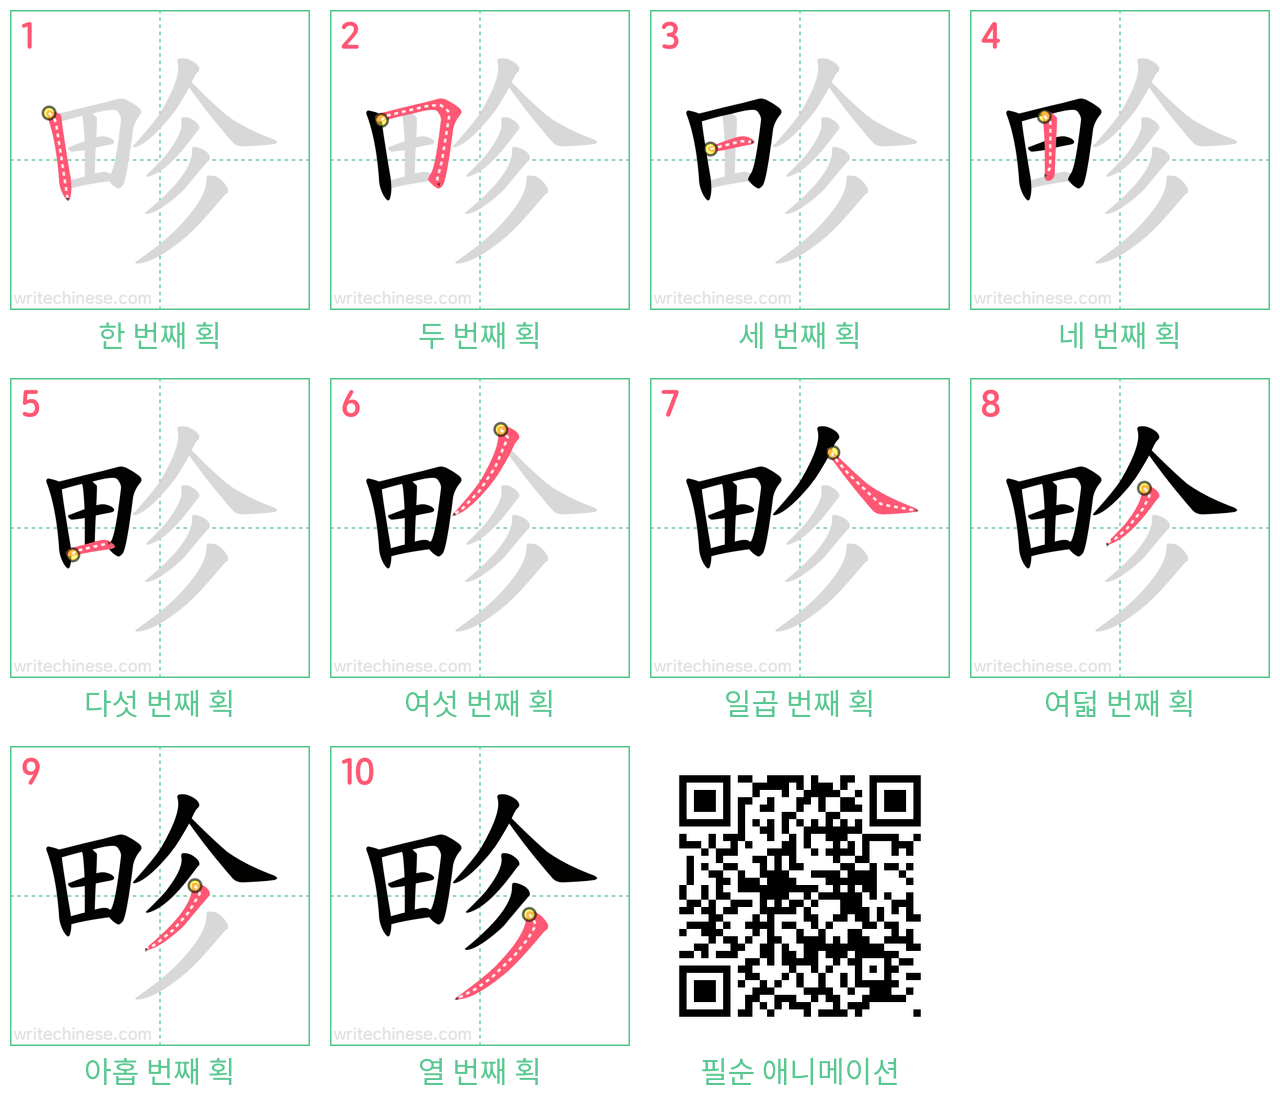 畛 step-by-step stroke order diagrams